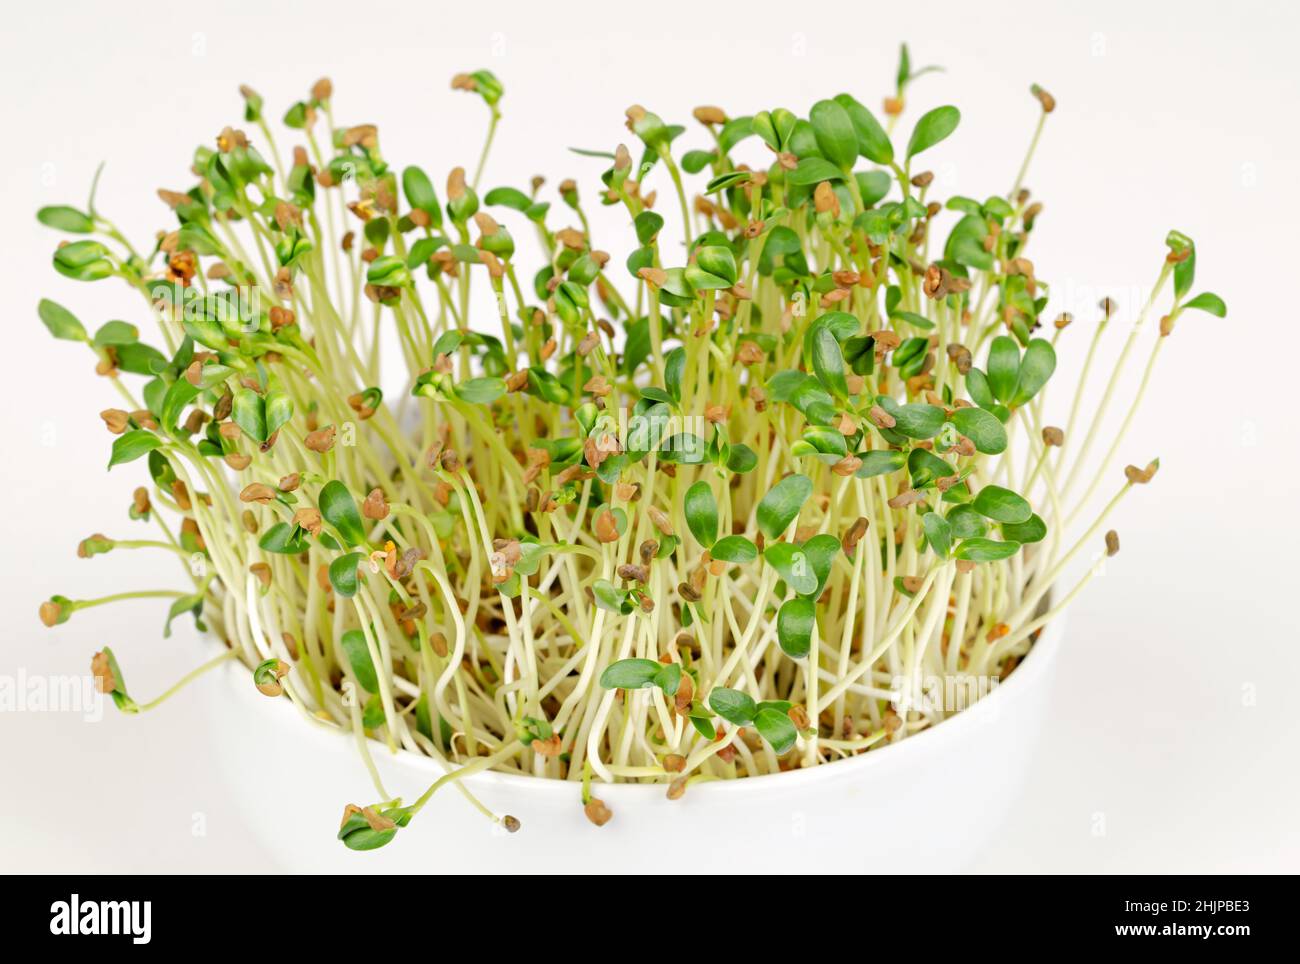 Bockshornklee-Microgreens in weißer Schale, Vorderansicht über Weiß. Bereit, junge Blätter, Triebe, Sprossen und Cotyledons von Trigonella foenum-graecum zu essen. Stockfoto